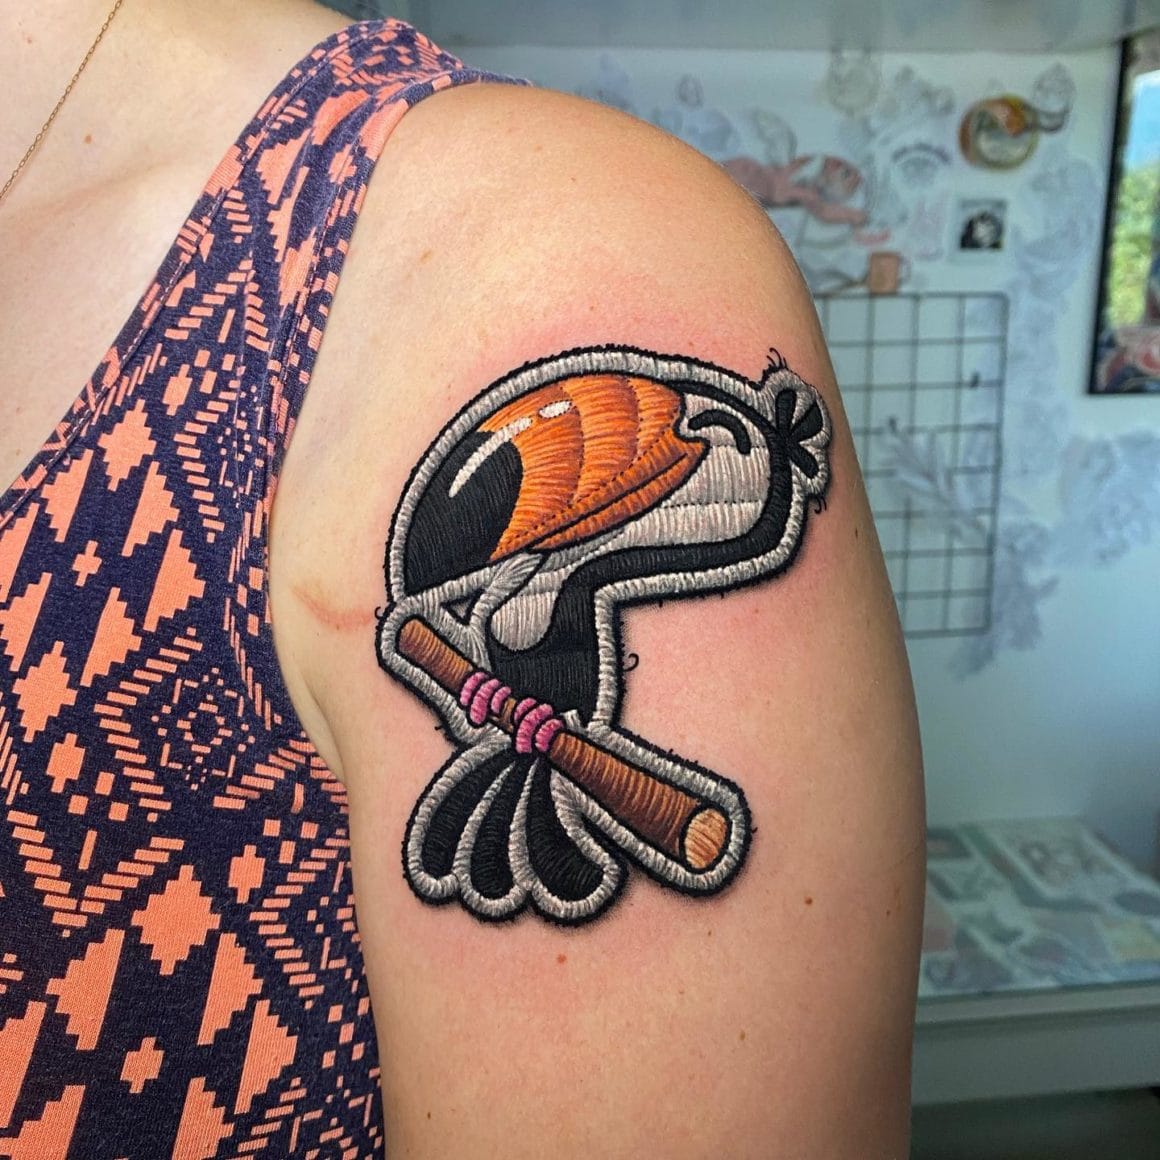 Ce tatouage représente un perroquet aux traits de dessins animés.